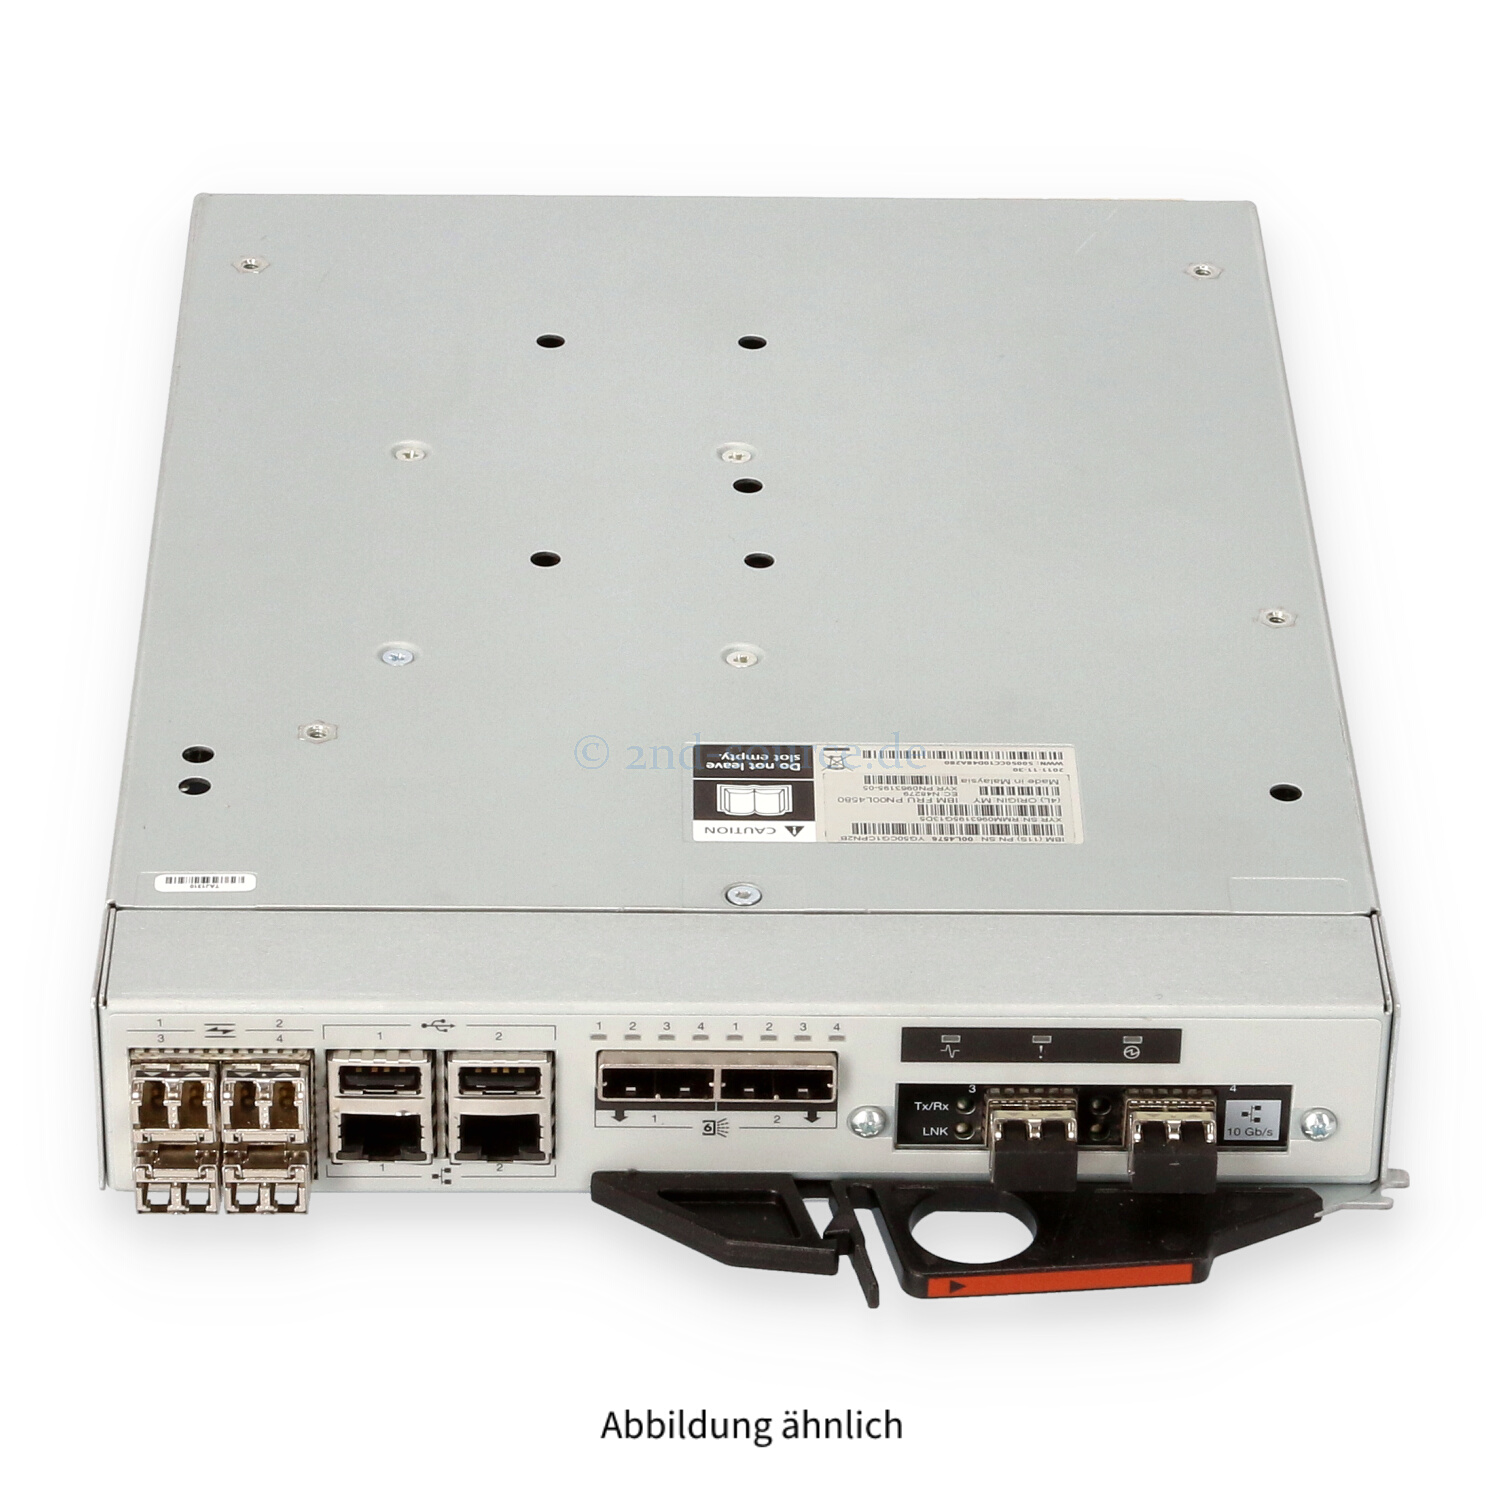 IBM ESM 8GB FC iSCSI Controller Storwize V7000 312/324 00L4580 00L4576